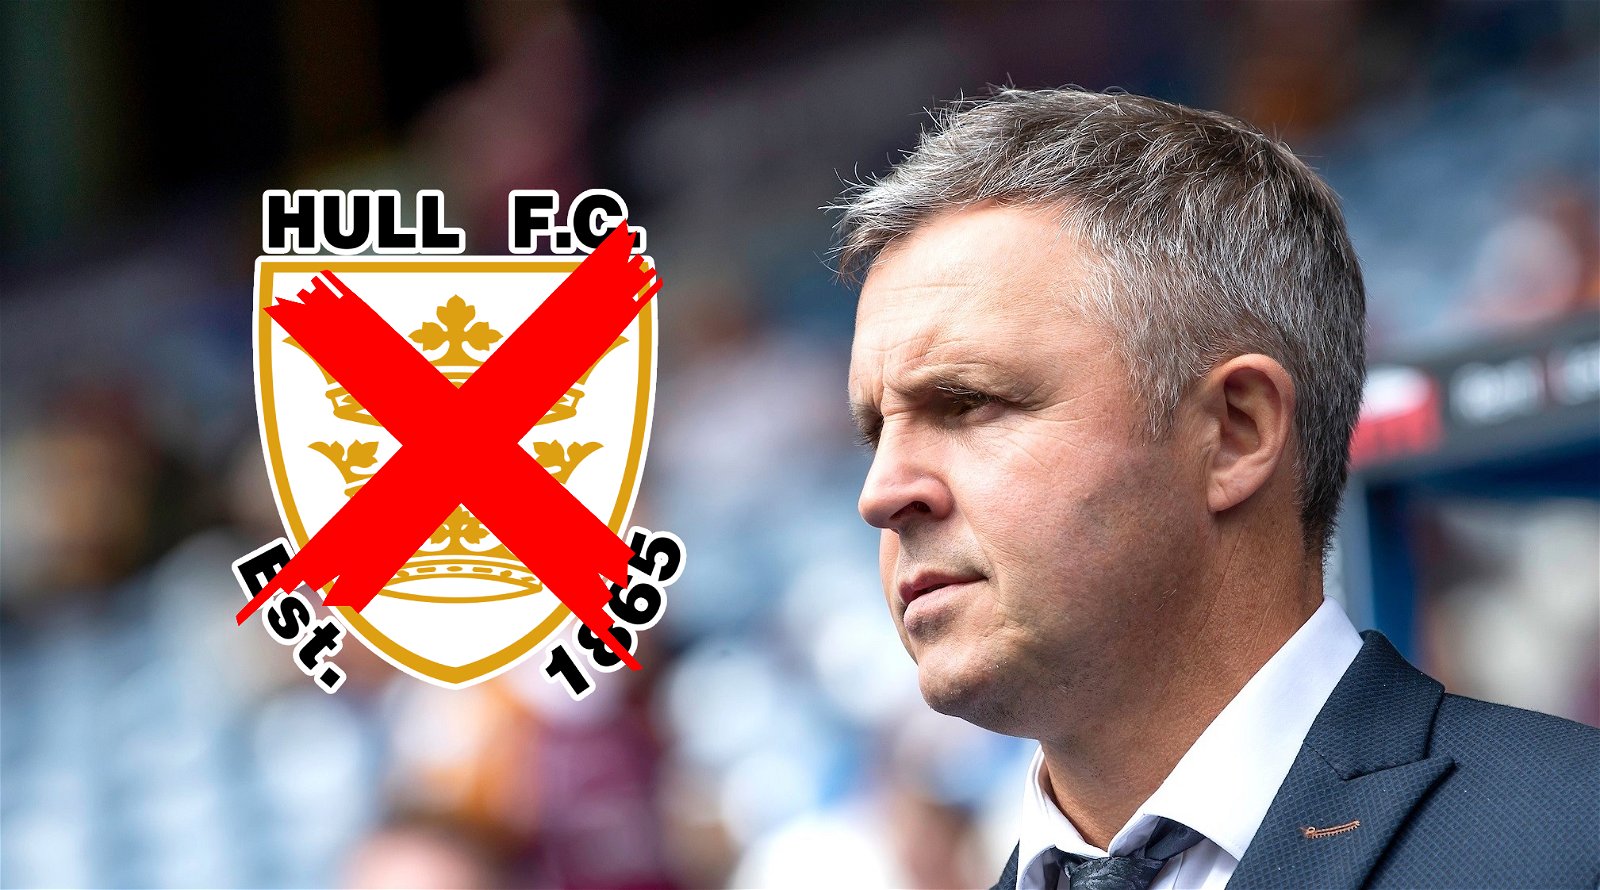 Paul Rowley has rejected the Hull FC job